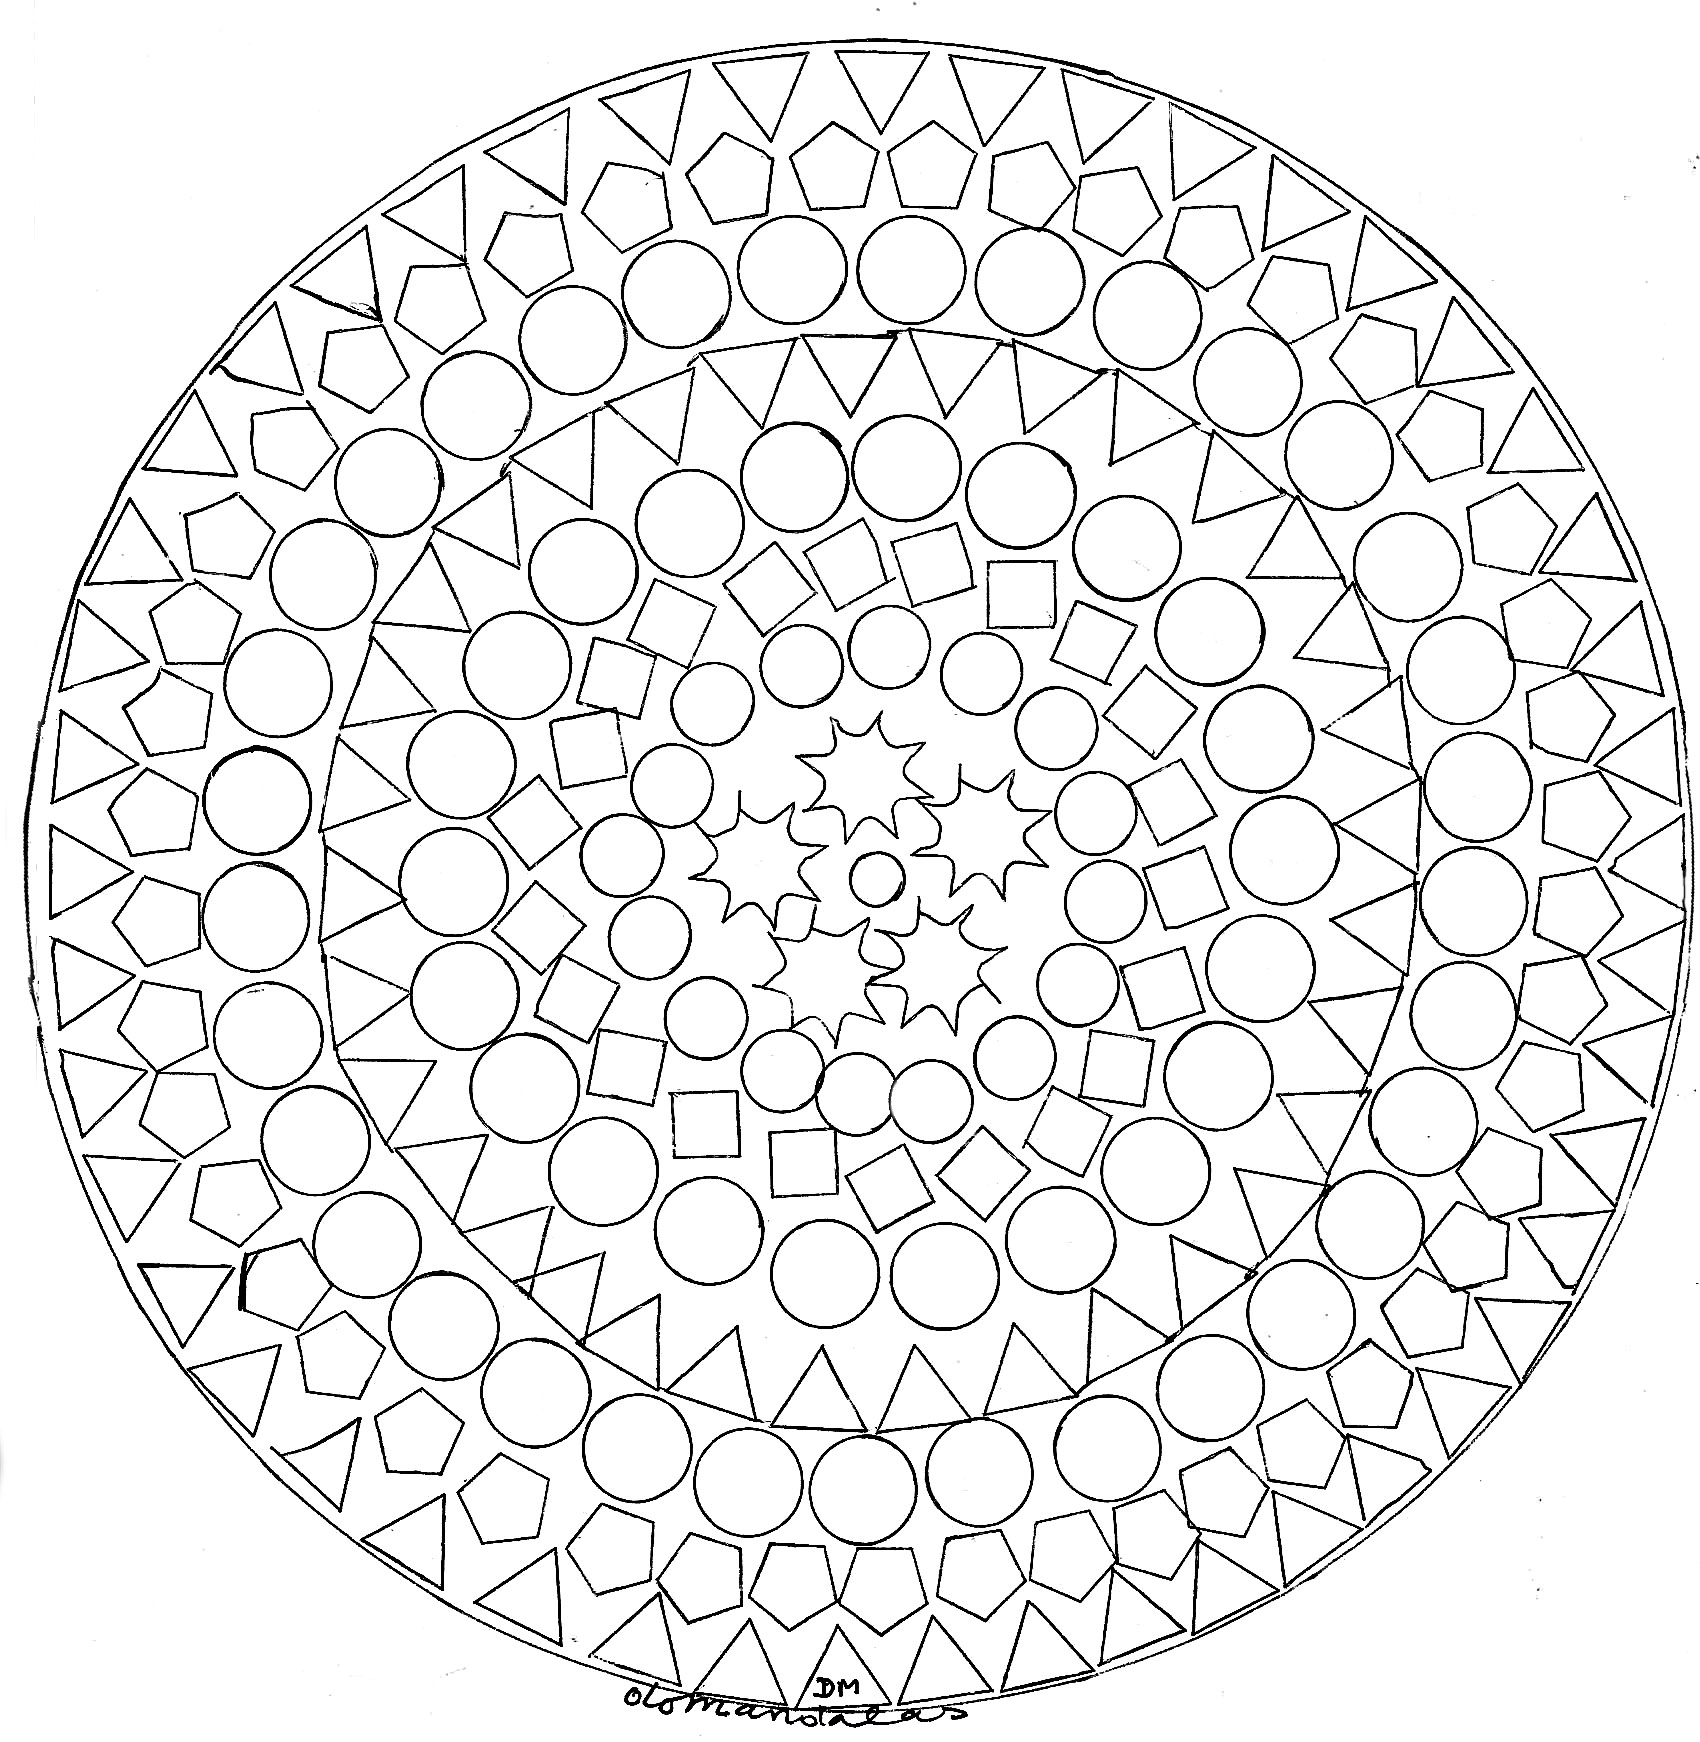 Si vous cherchez un Mandala avec des ronds pas trop compliqué à colorier, mais avec quand même un niveau de difficulté relatif, celui-ci est parfait pour vous.